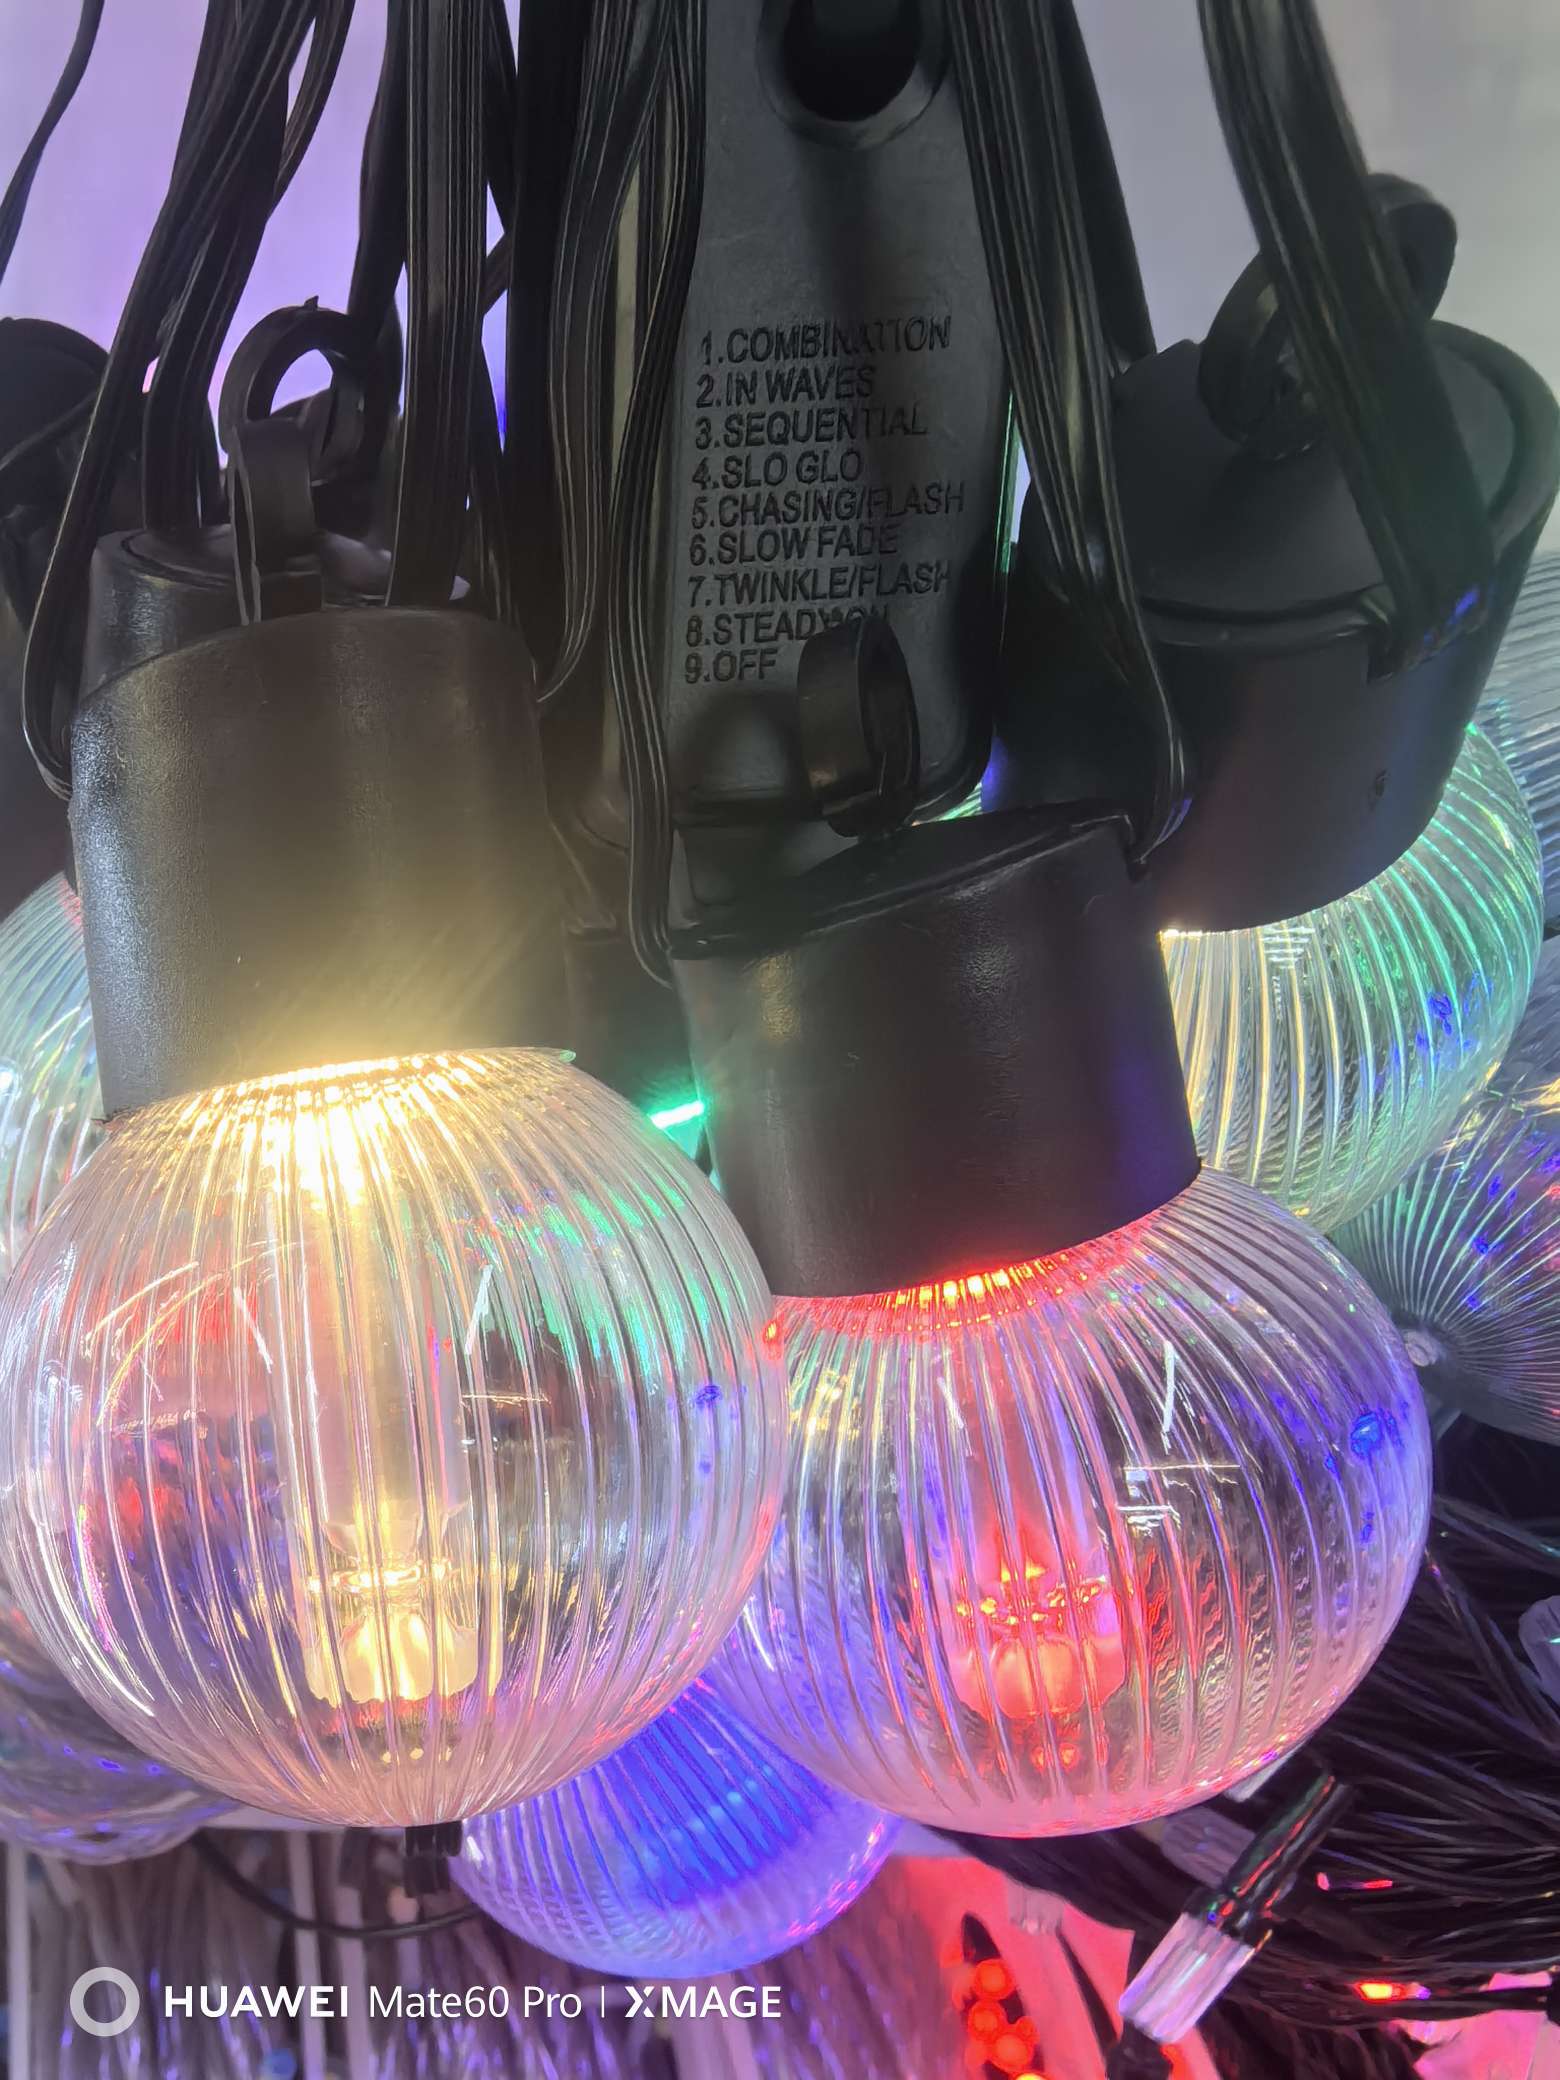 LED灯串照明饰品 室内发光树装饰 鈴噹灯串配件 LED洗地机 灯饰照明增添氛围 美观耐用产品图